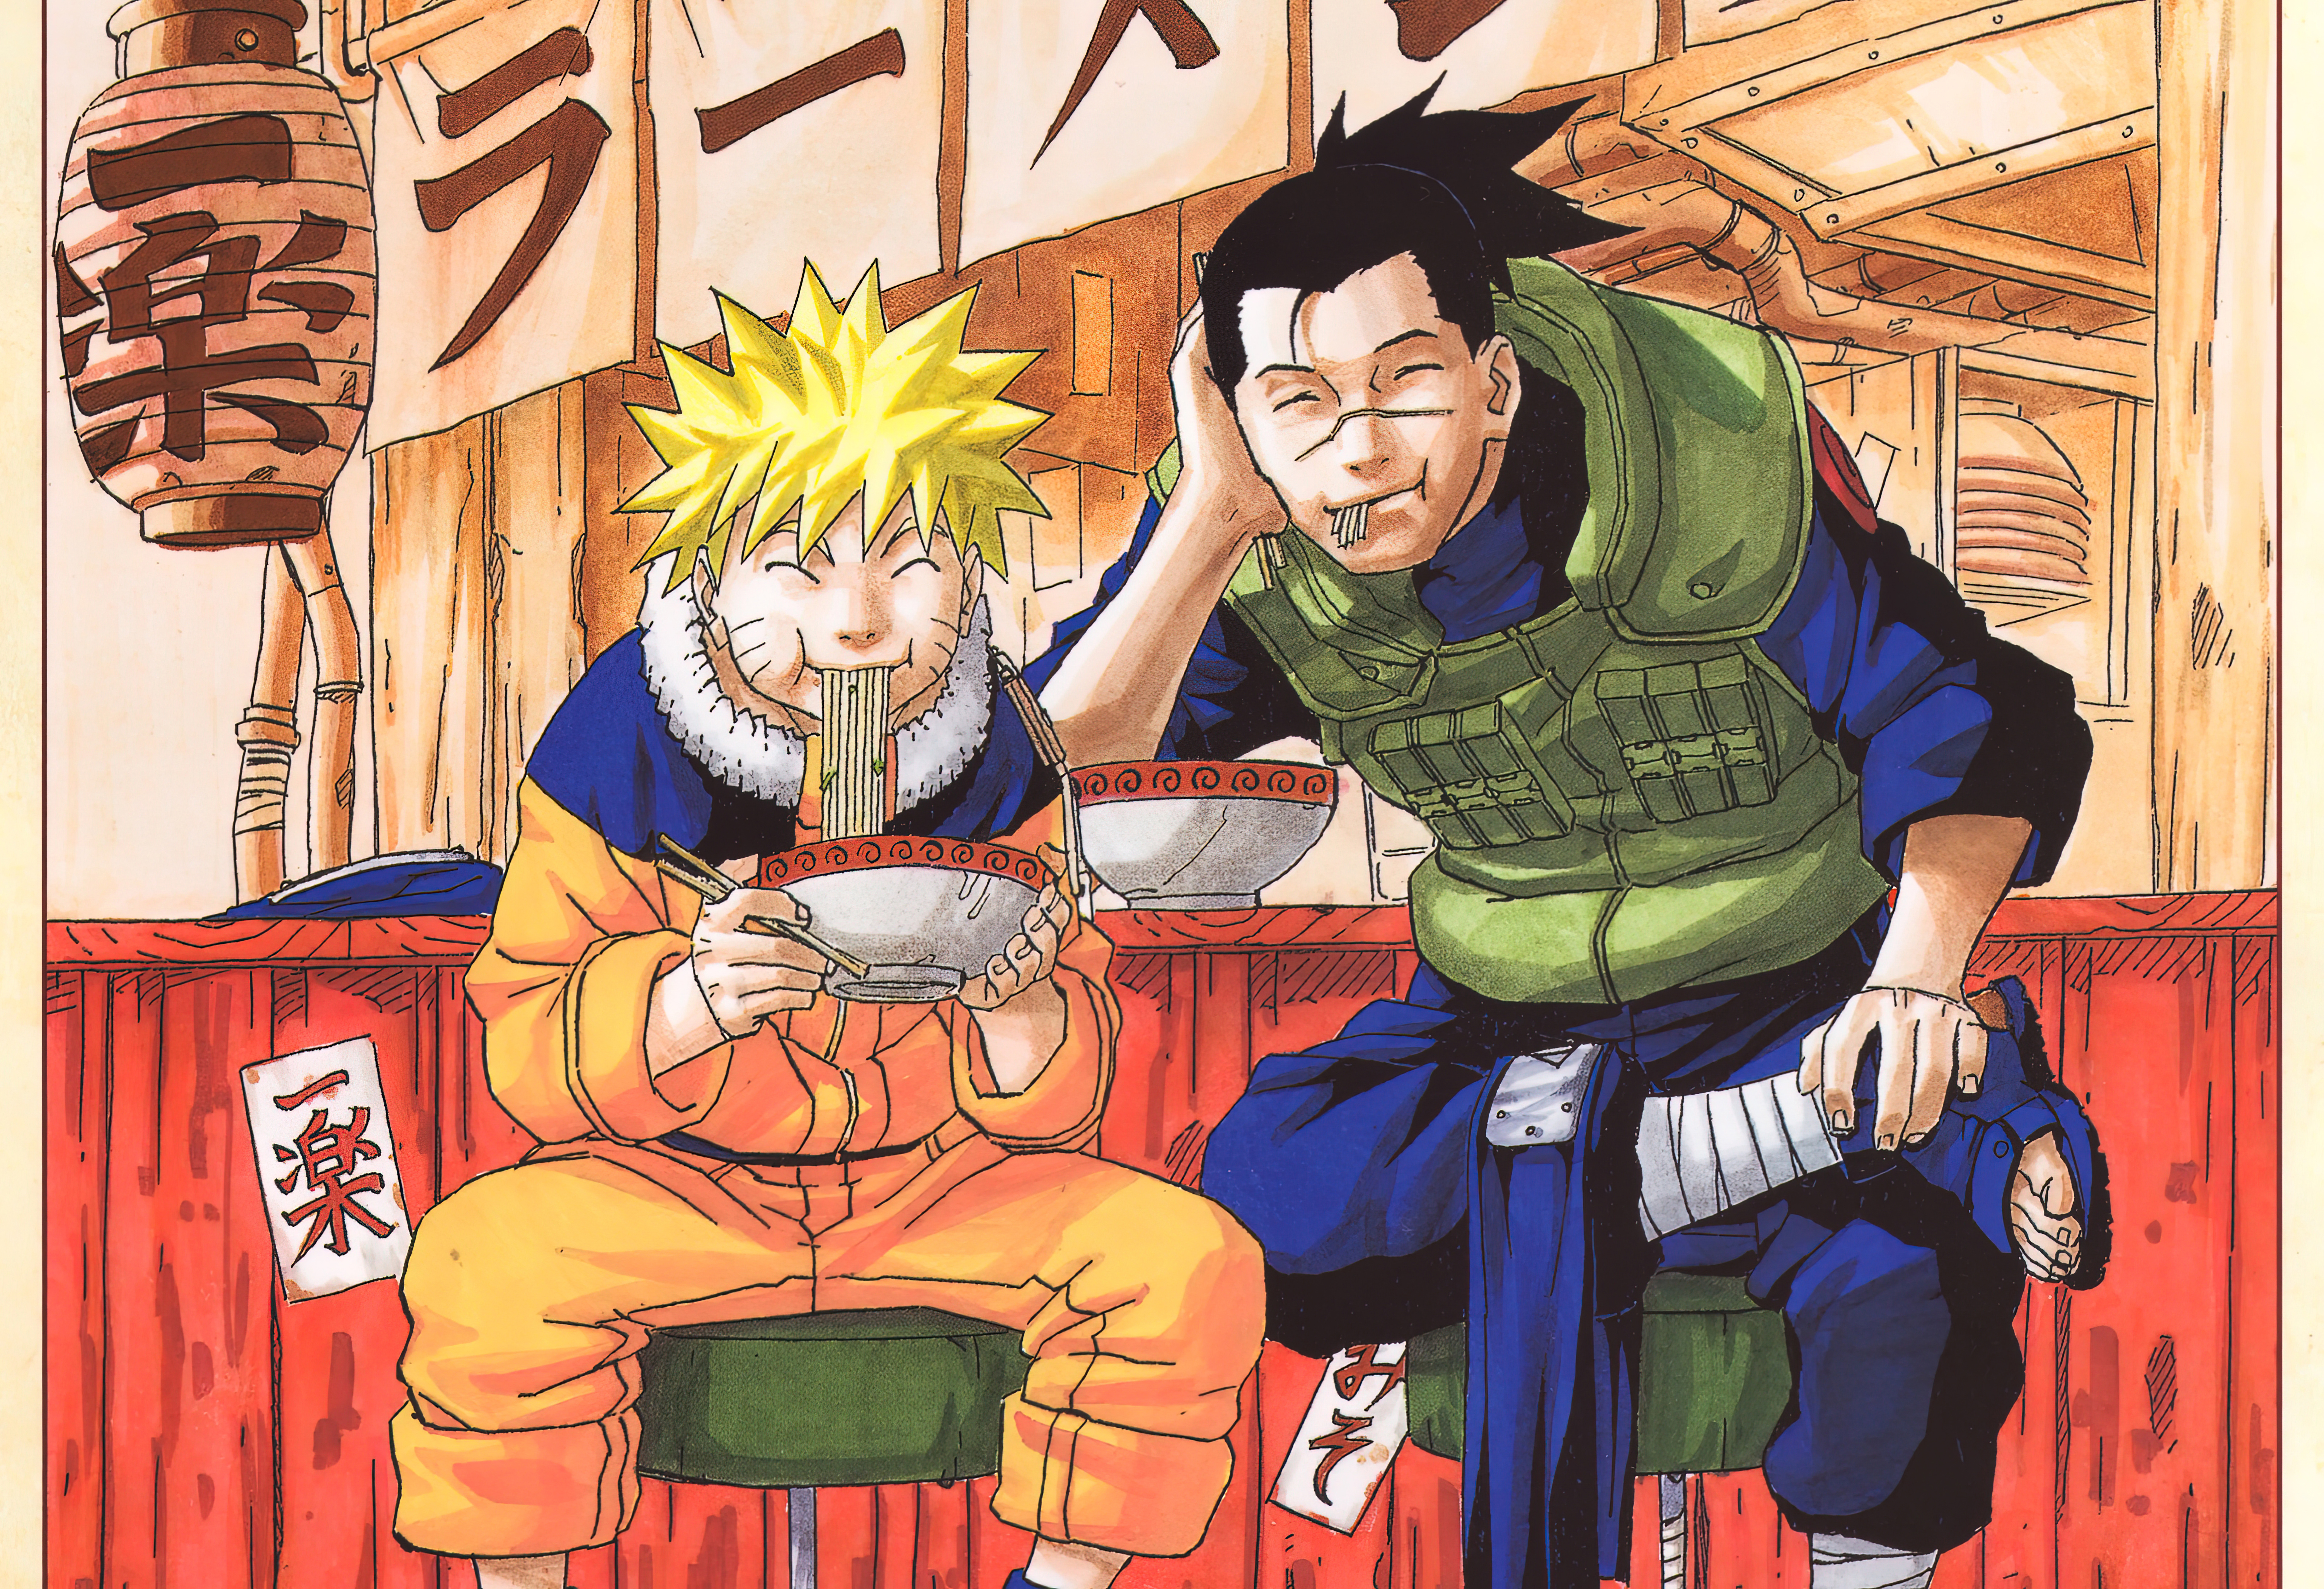 Anime 7680x5252 Naruto (anime) Uzumaki Naruto Umino Iruka anime boys anime men eating noodles closed eyes uniform manga sitting Japanese chopsticks